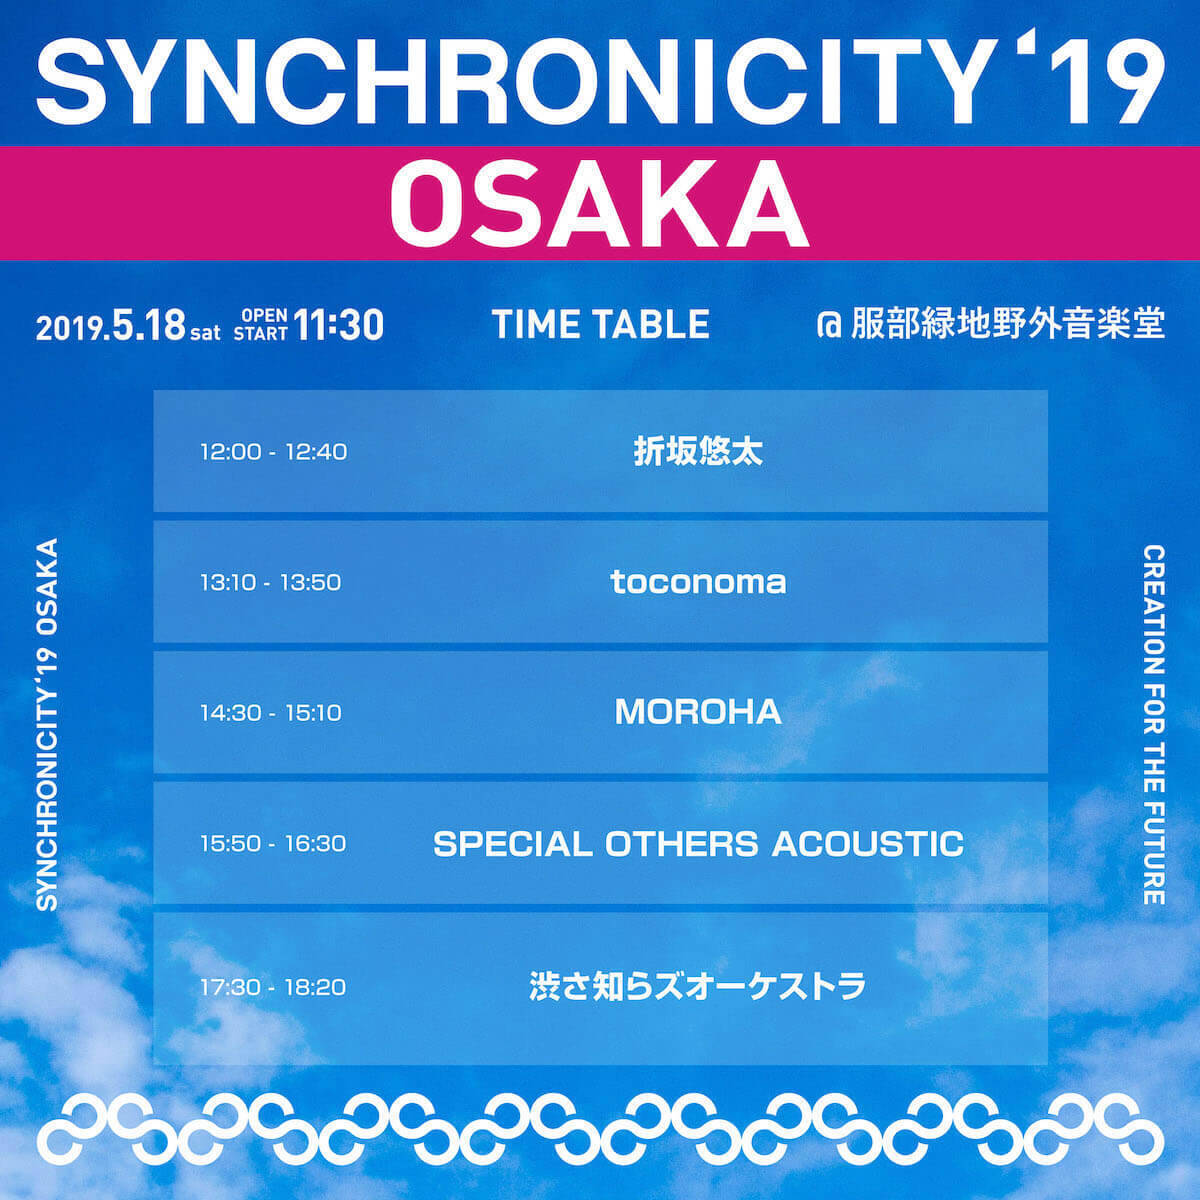 東京と同じく渋さ知らズオーケストラがトリ！＜SYNCHRONICITY’19 OSAKA＞のタイムテーブル発表